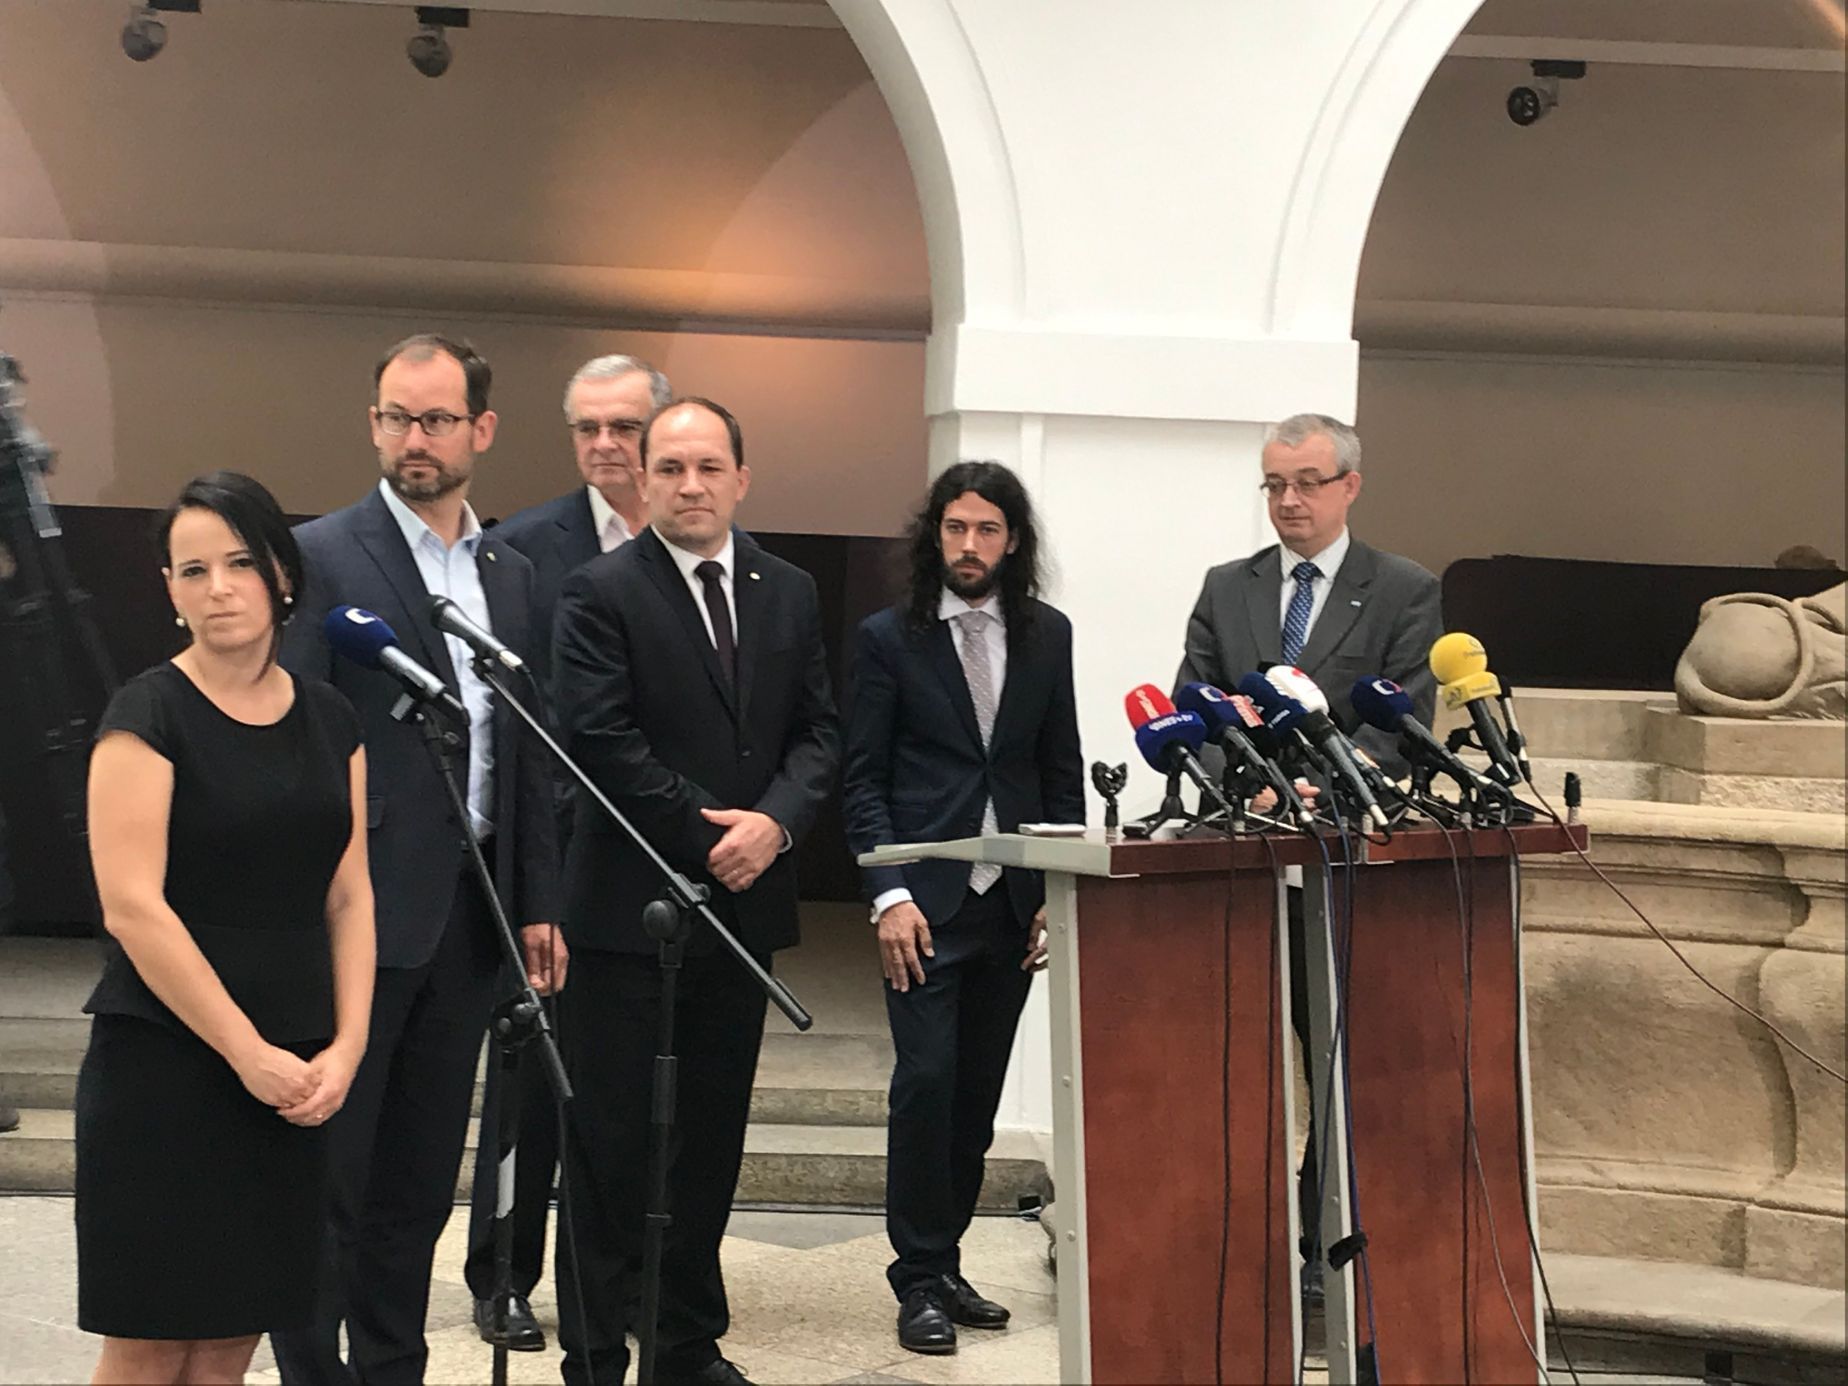 Opoziční poslanci oznamují podání stížnosti Ústavnímu soudu v Brně